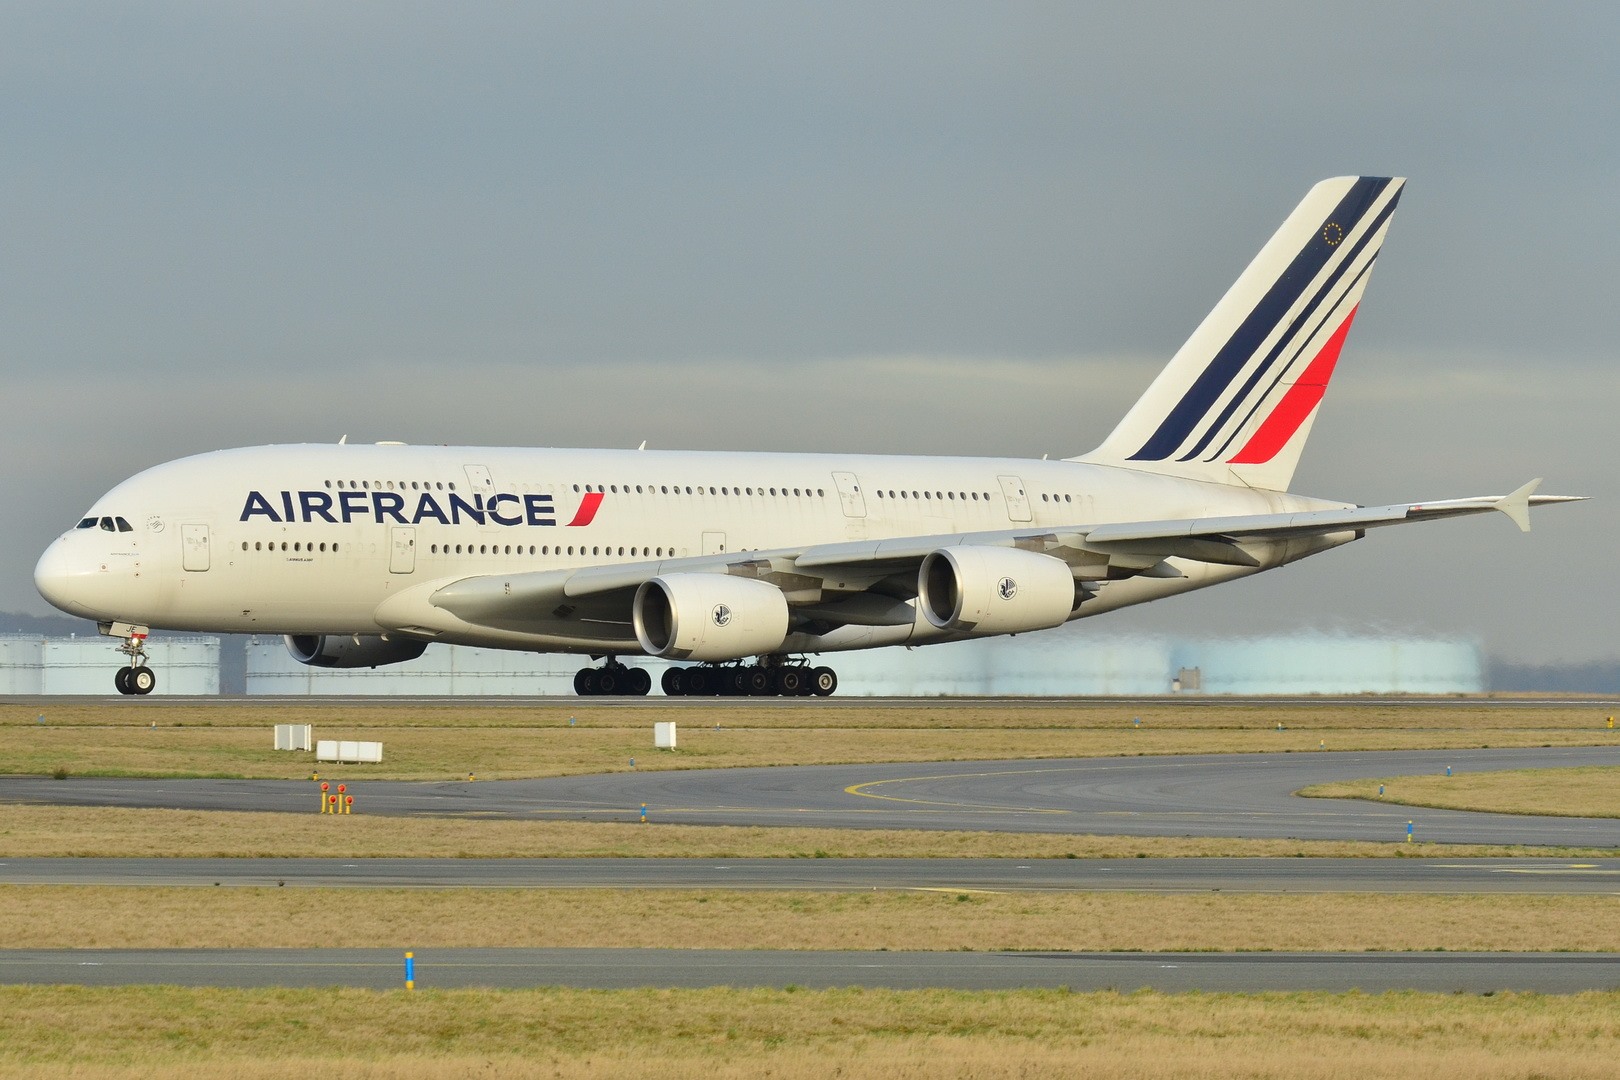 Pháp dự kiến cấm các chuyến bay ngắn trên một số tuyến nội địa. Ảnh: Wiki